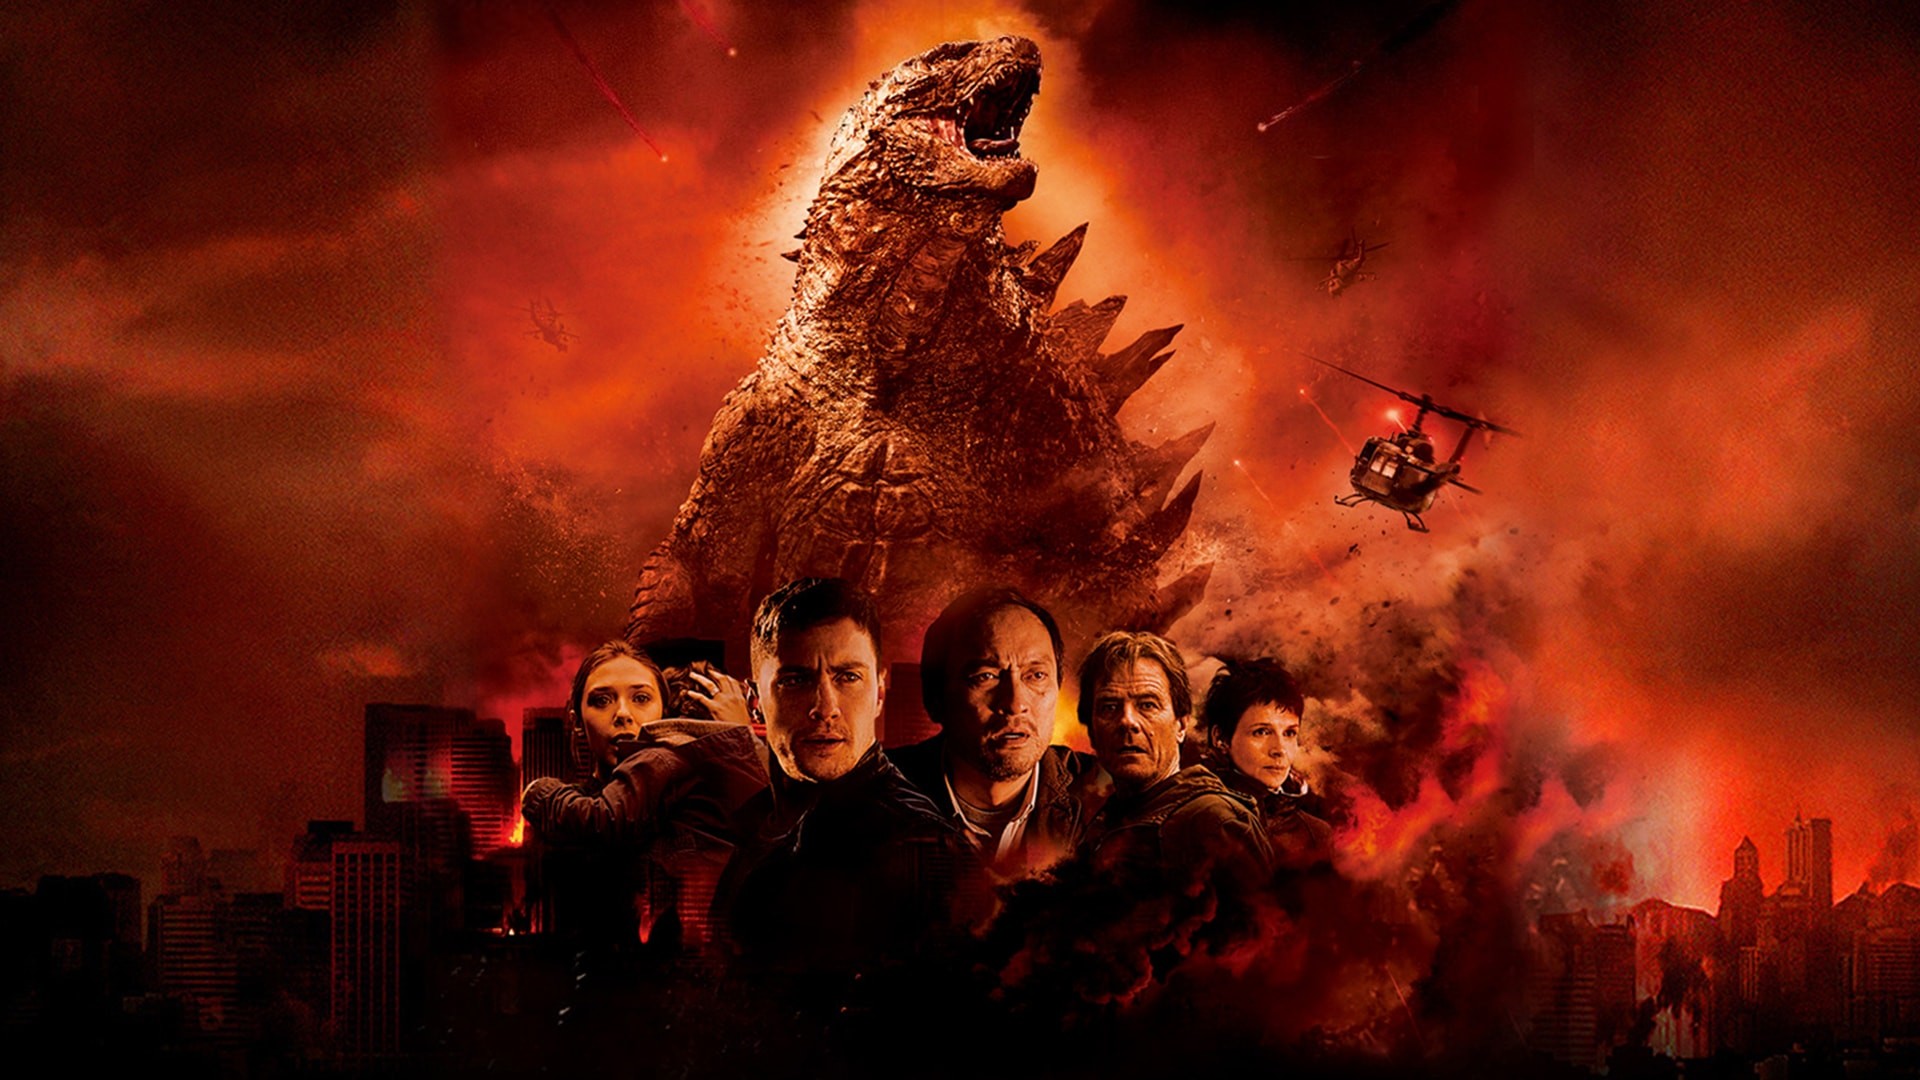 1920x1080 Godzilla 2014 Wallpaper